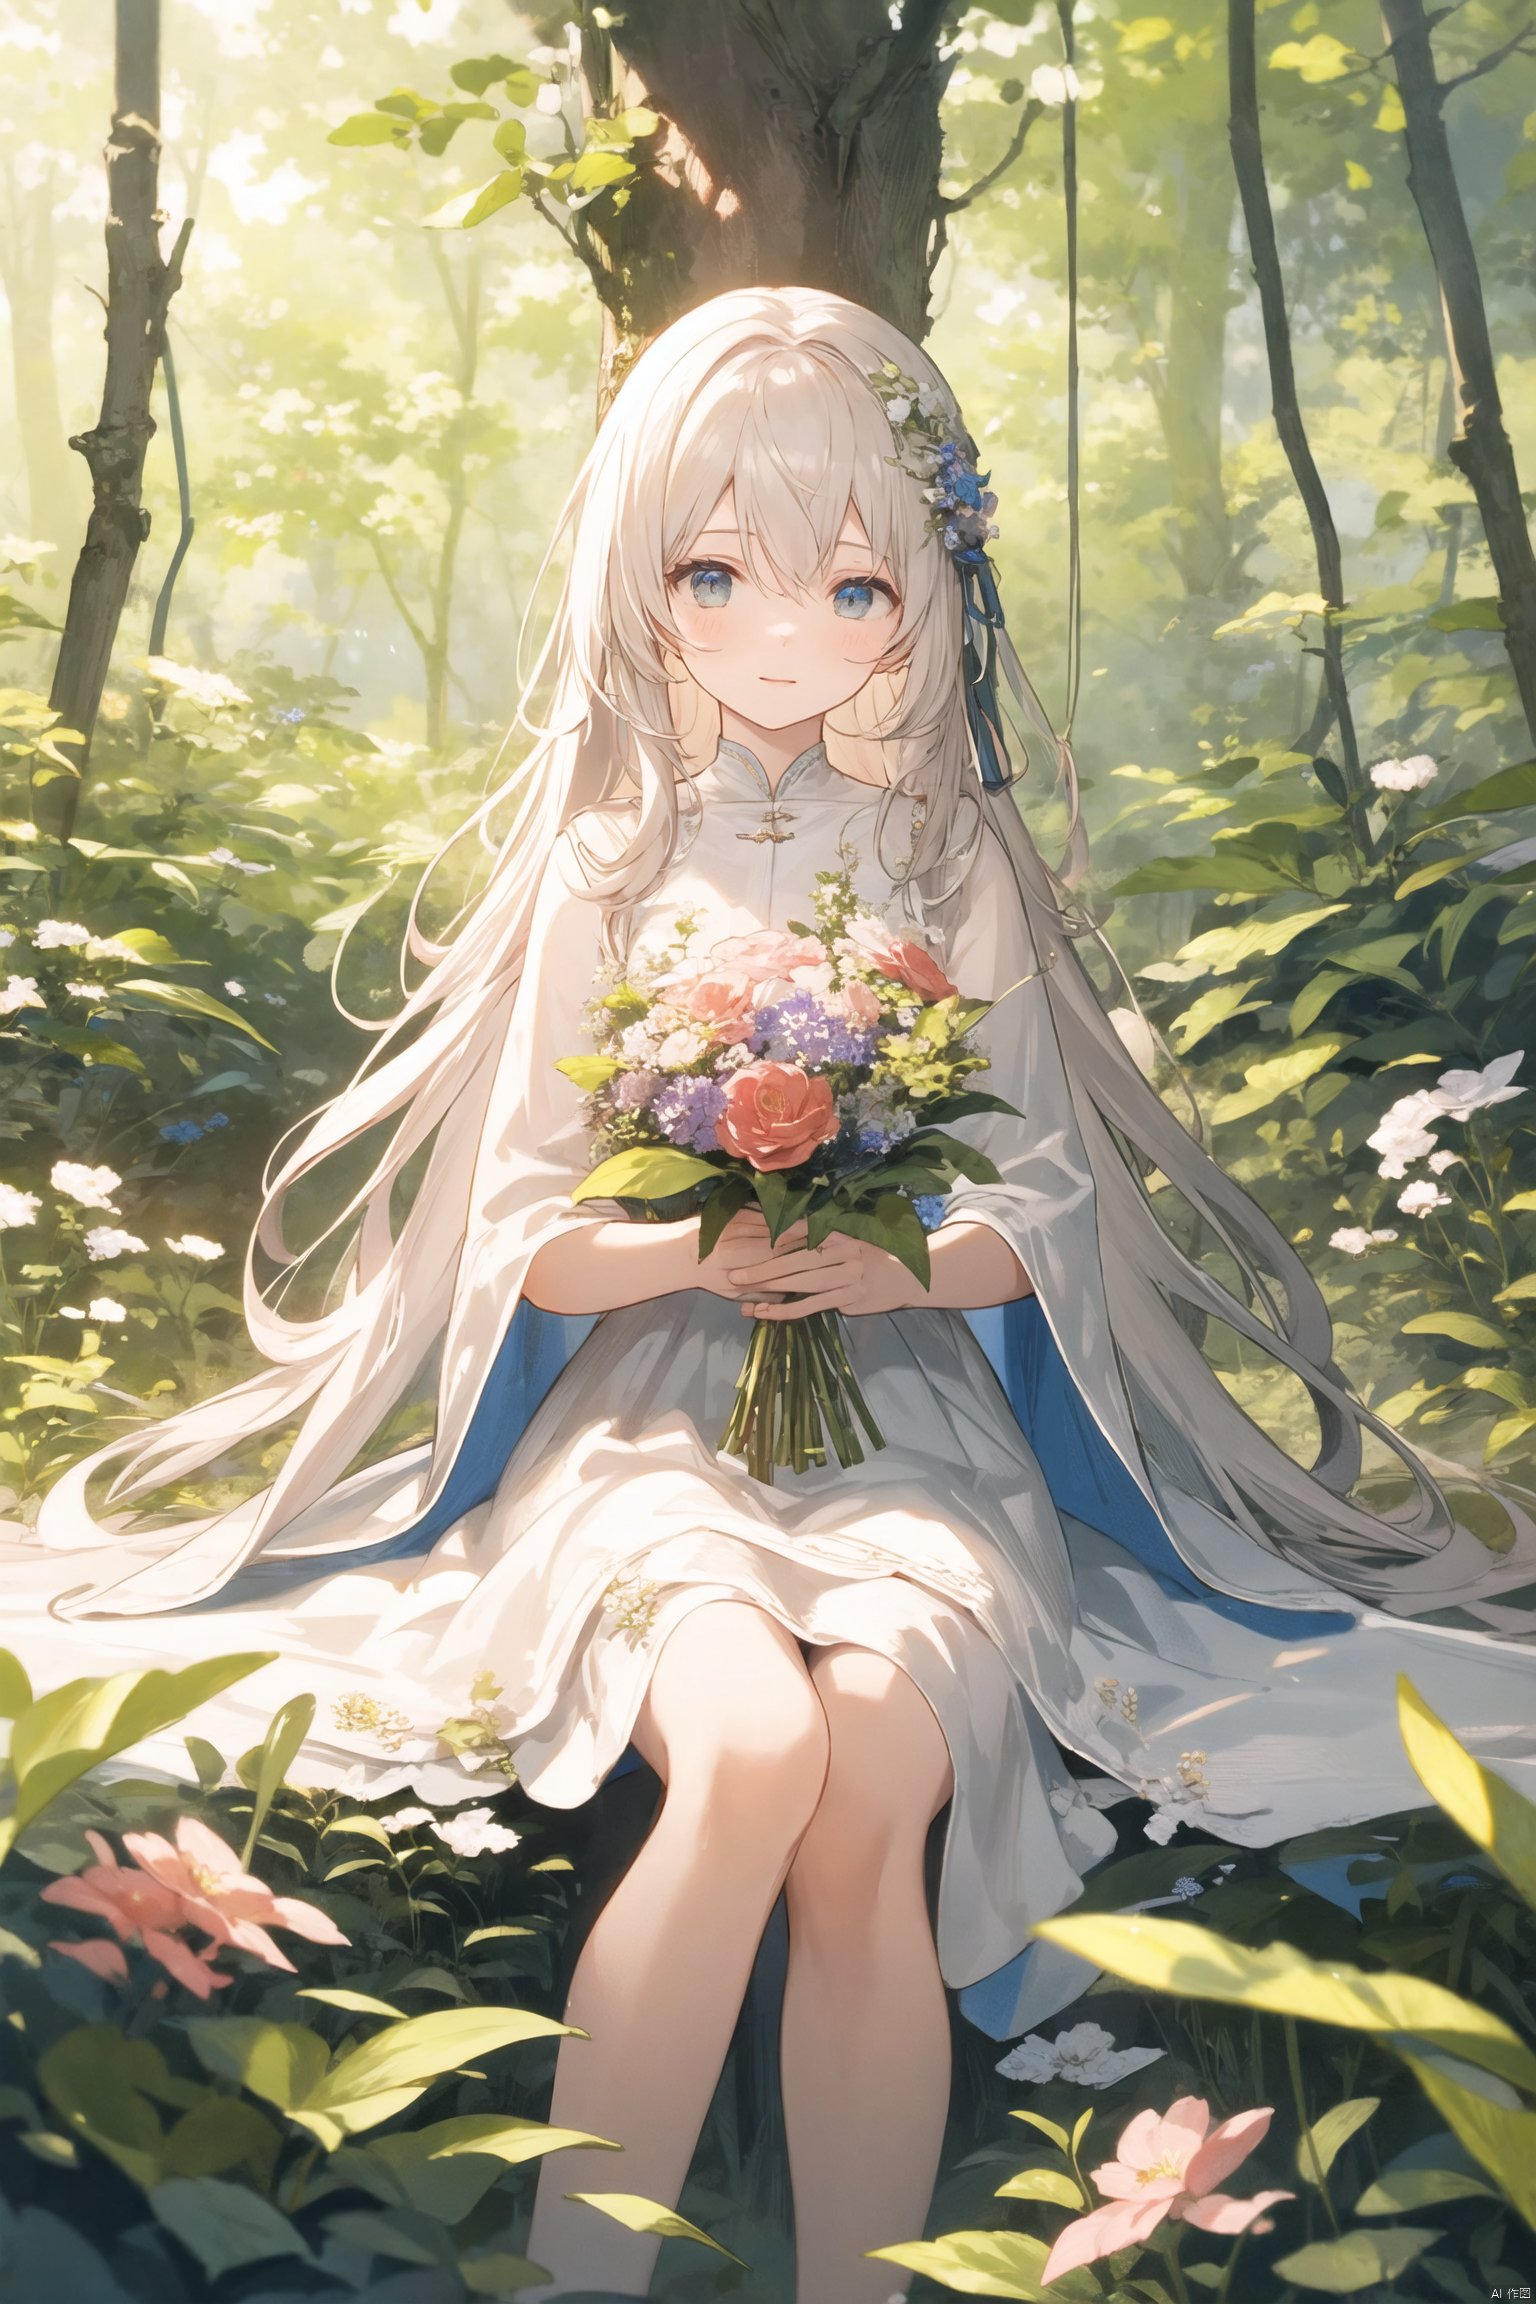  masterpiece,best quality,ï¼ 1girl, sitting on grass, flowers, holding flowers, warm lighting, white dress, blurry foreground, (forest:1.5)